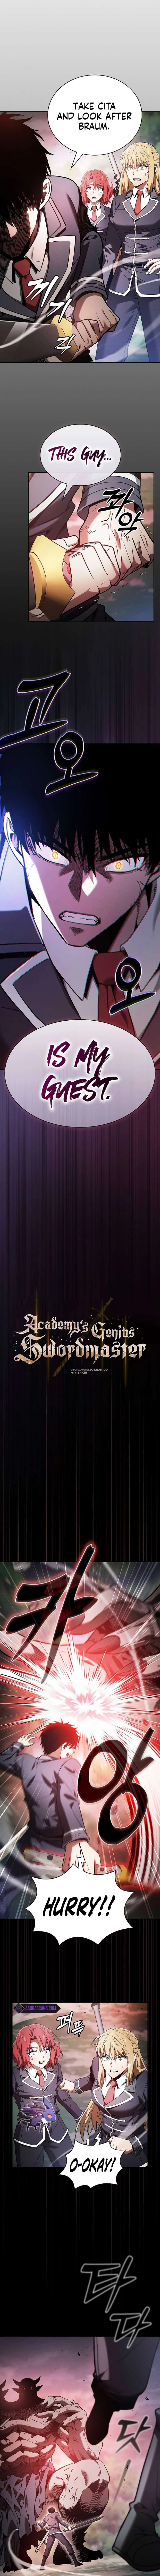 Academy’s Genius Swordmaster Chapter 45 page 2